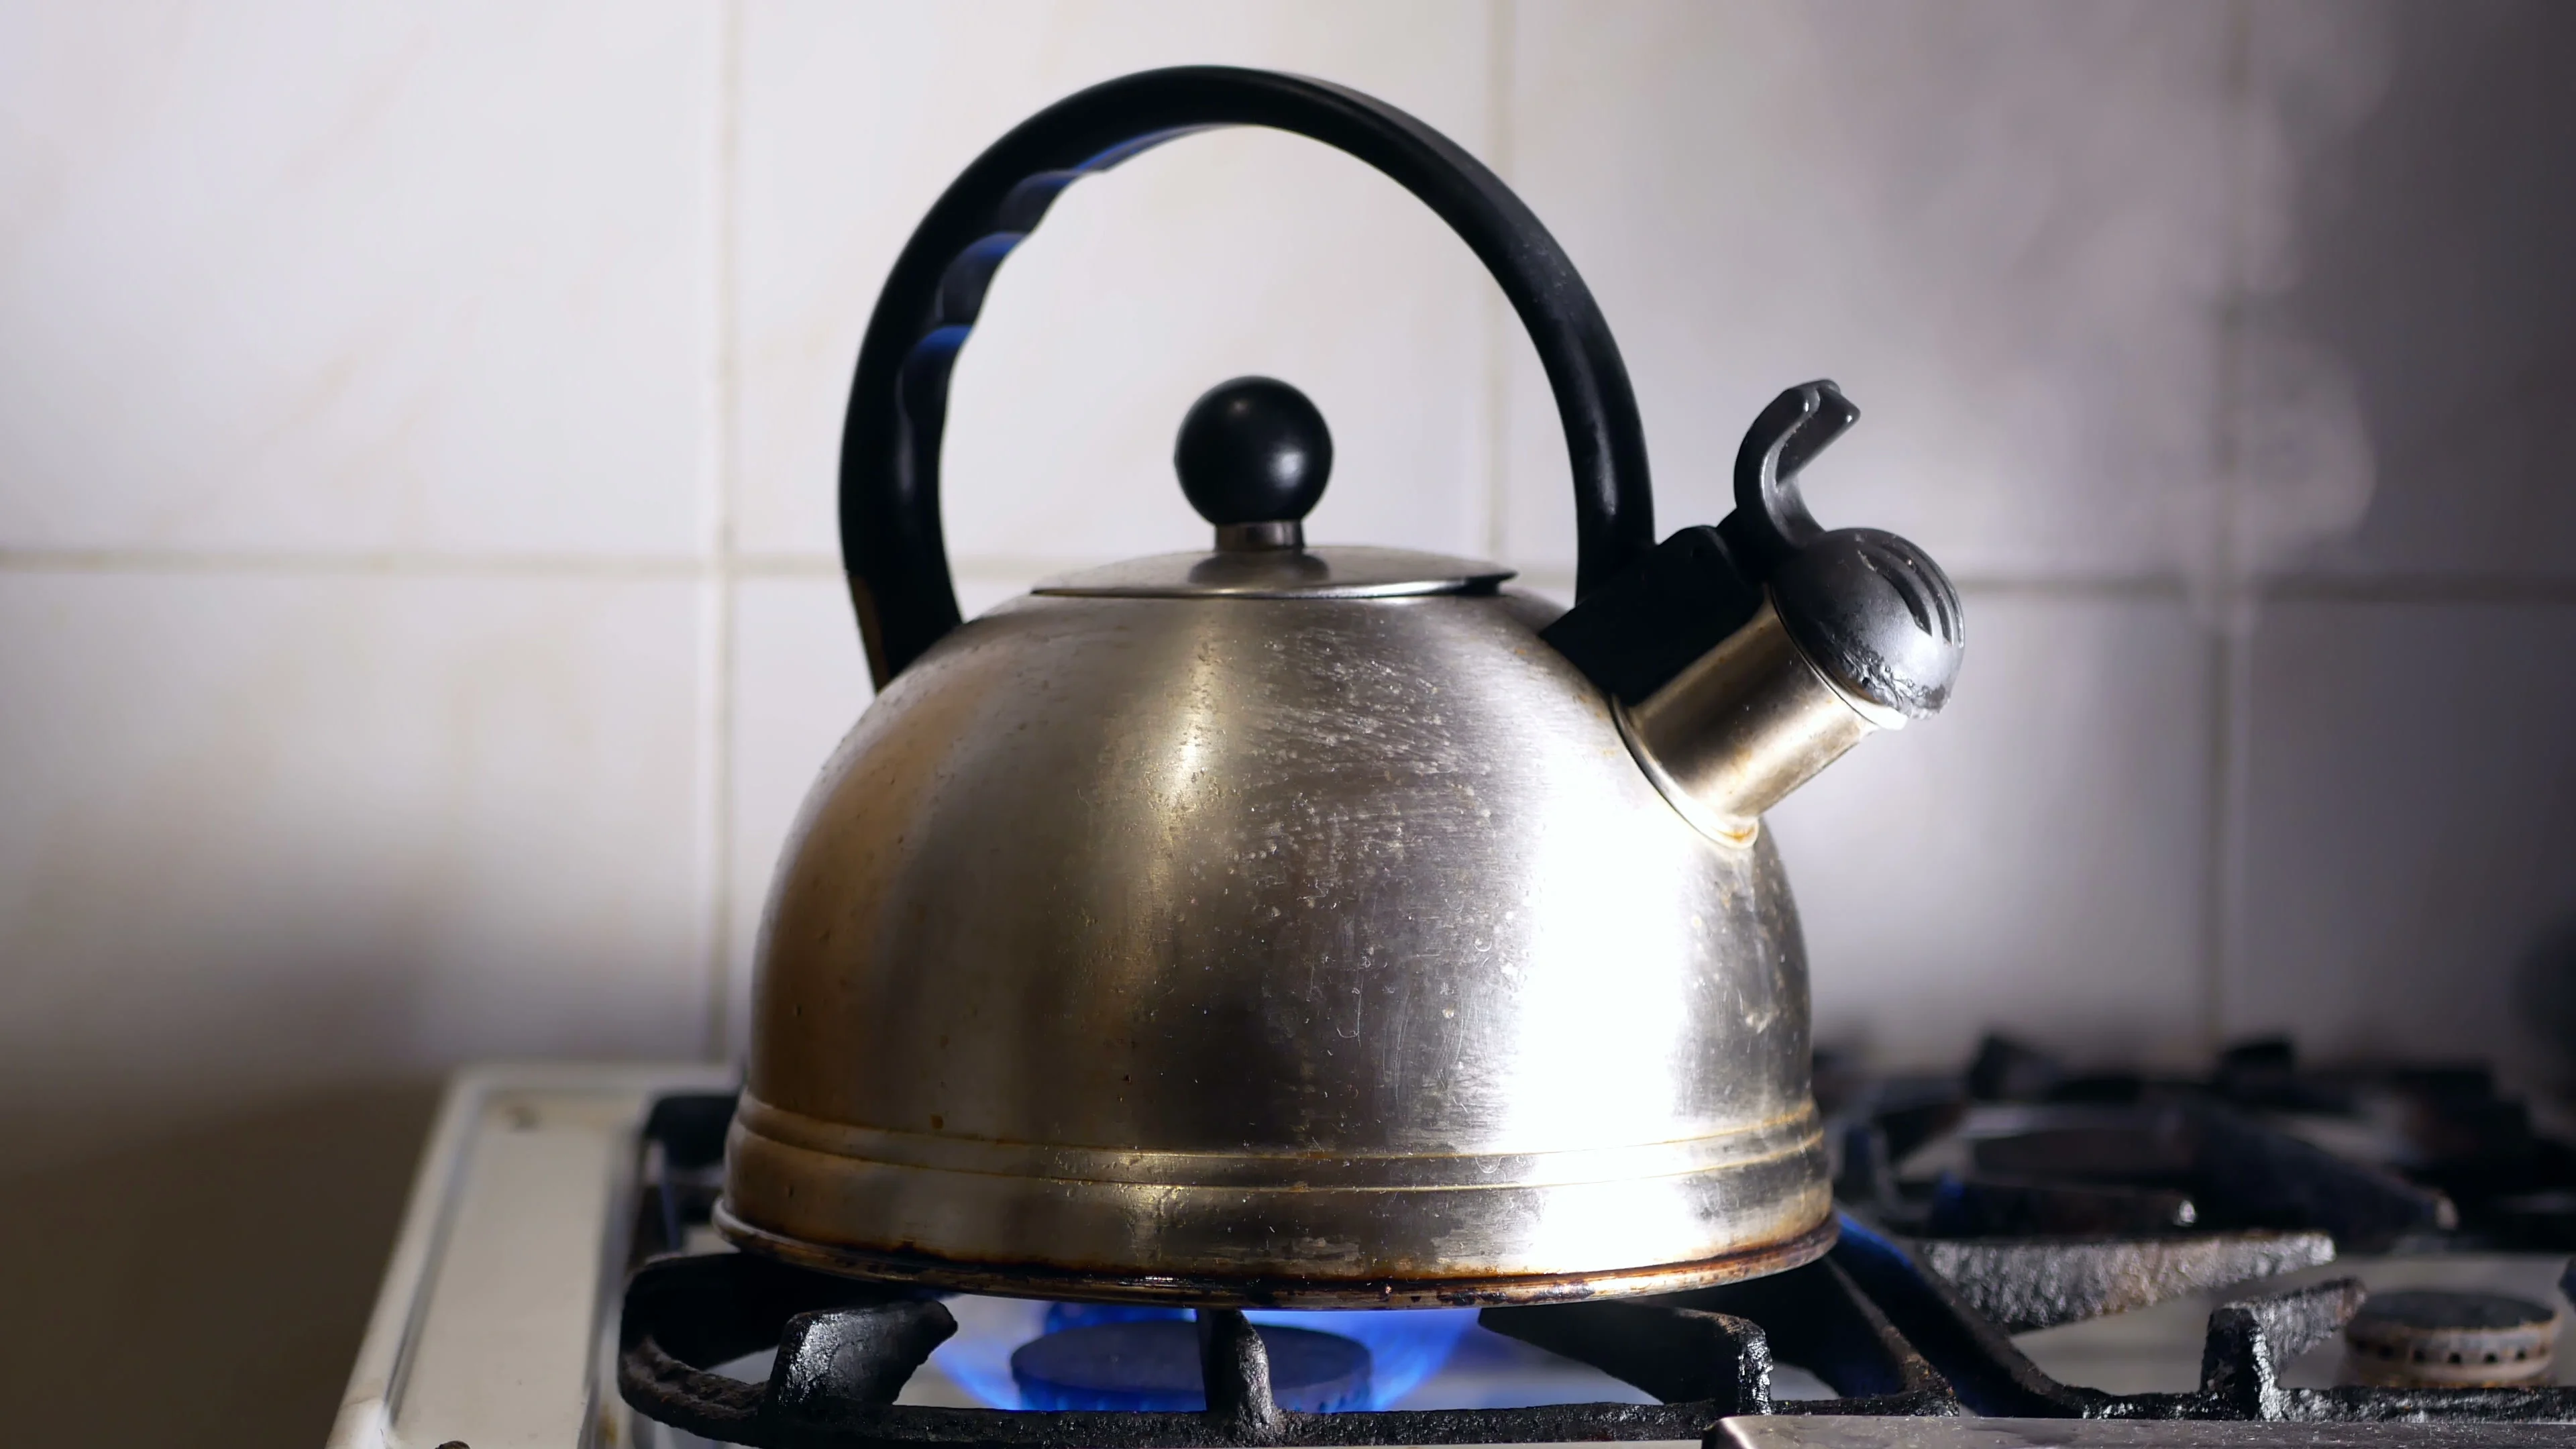 https://images.pond5.com/kettle-boiling-hot-stove-085058171_prevstill.jpeg